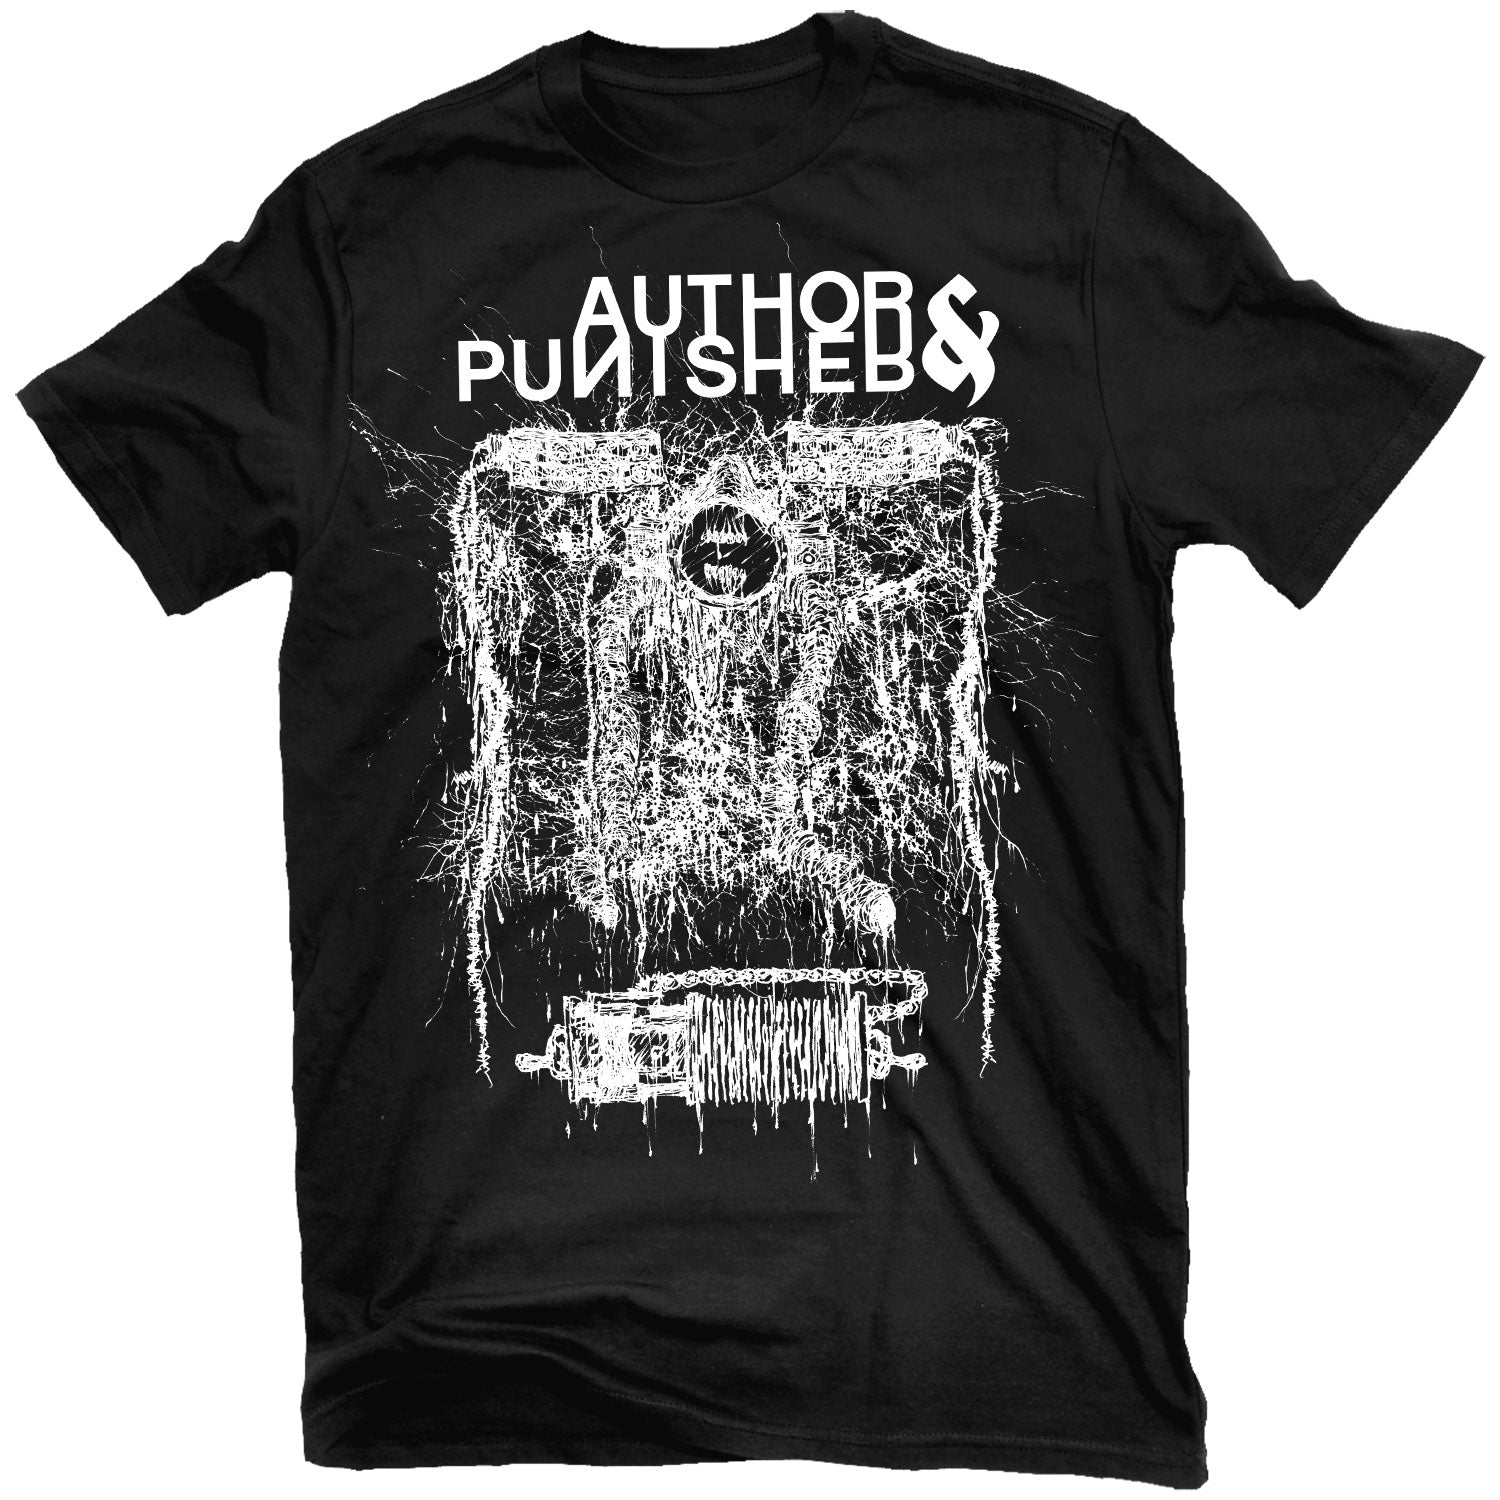 Author & Punisher "Machines" T-Shirt